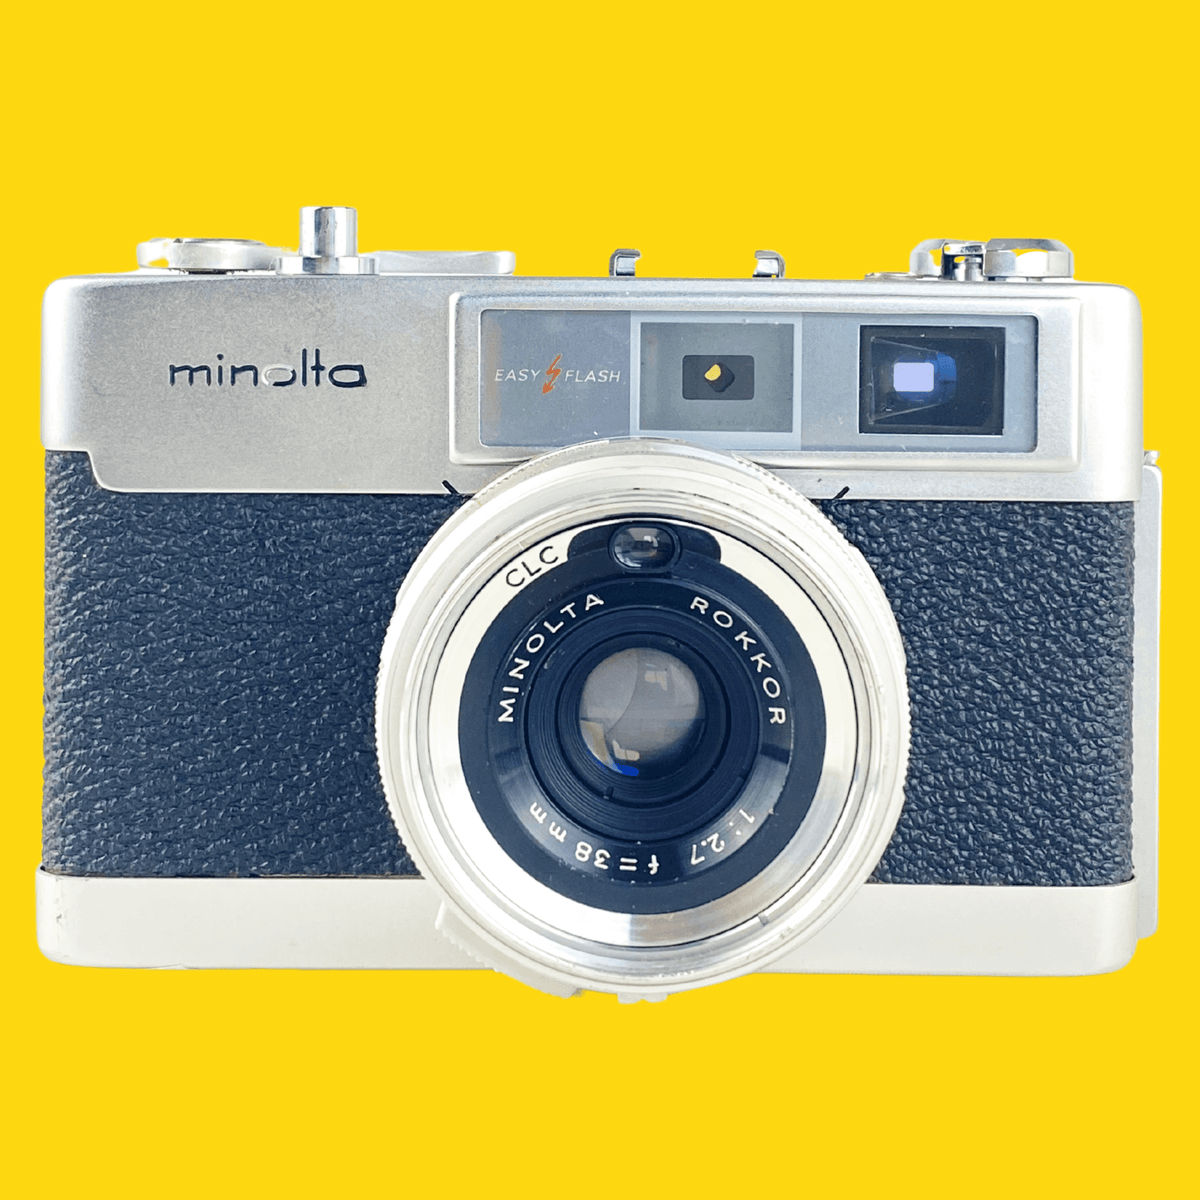 ミノルタ AL-F 35mm フィルム カメラ ポイント アンド シュート レンジファインダー